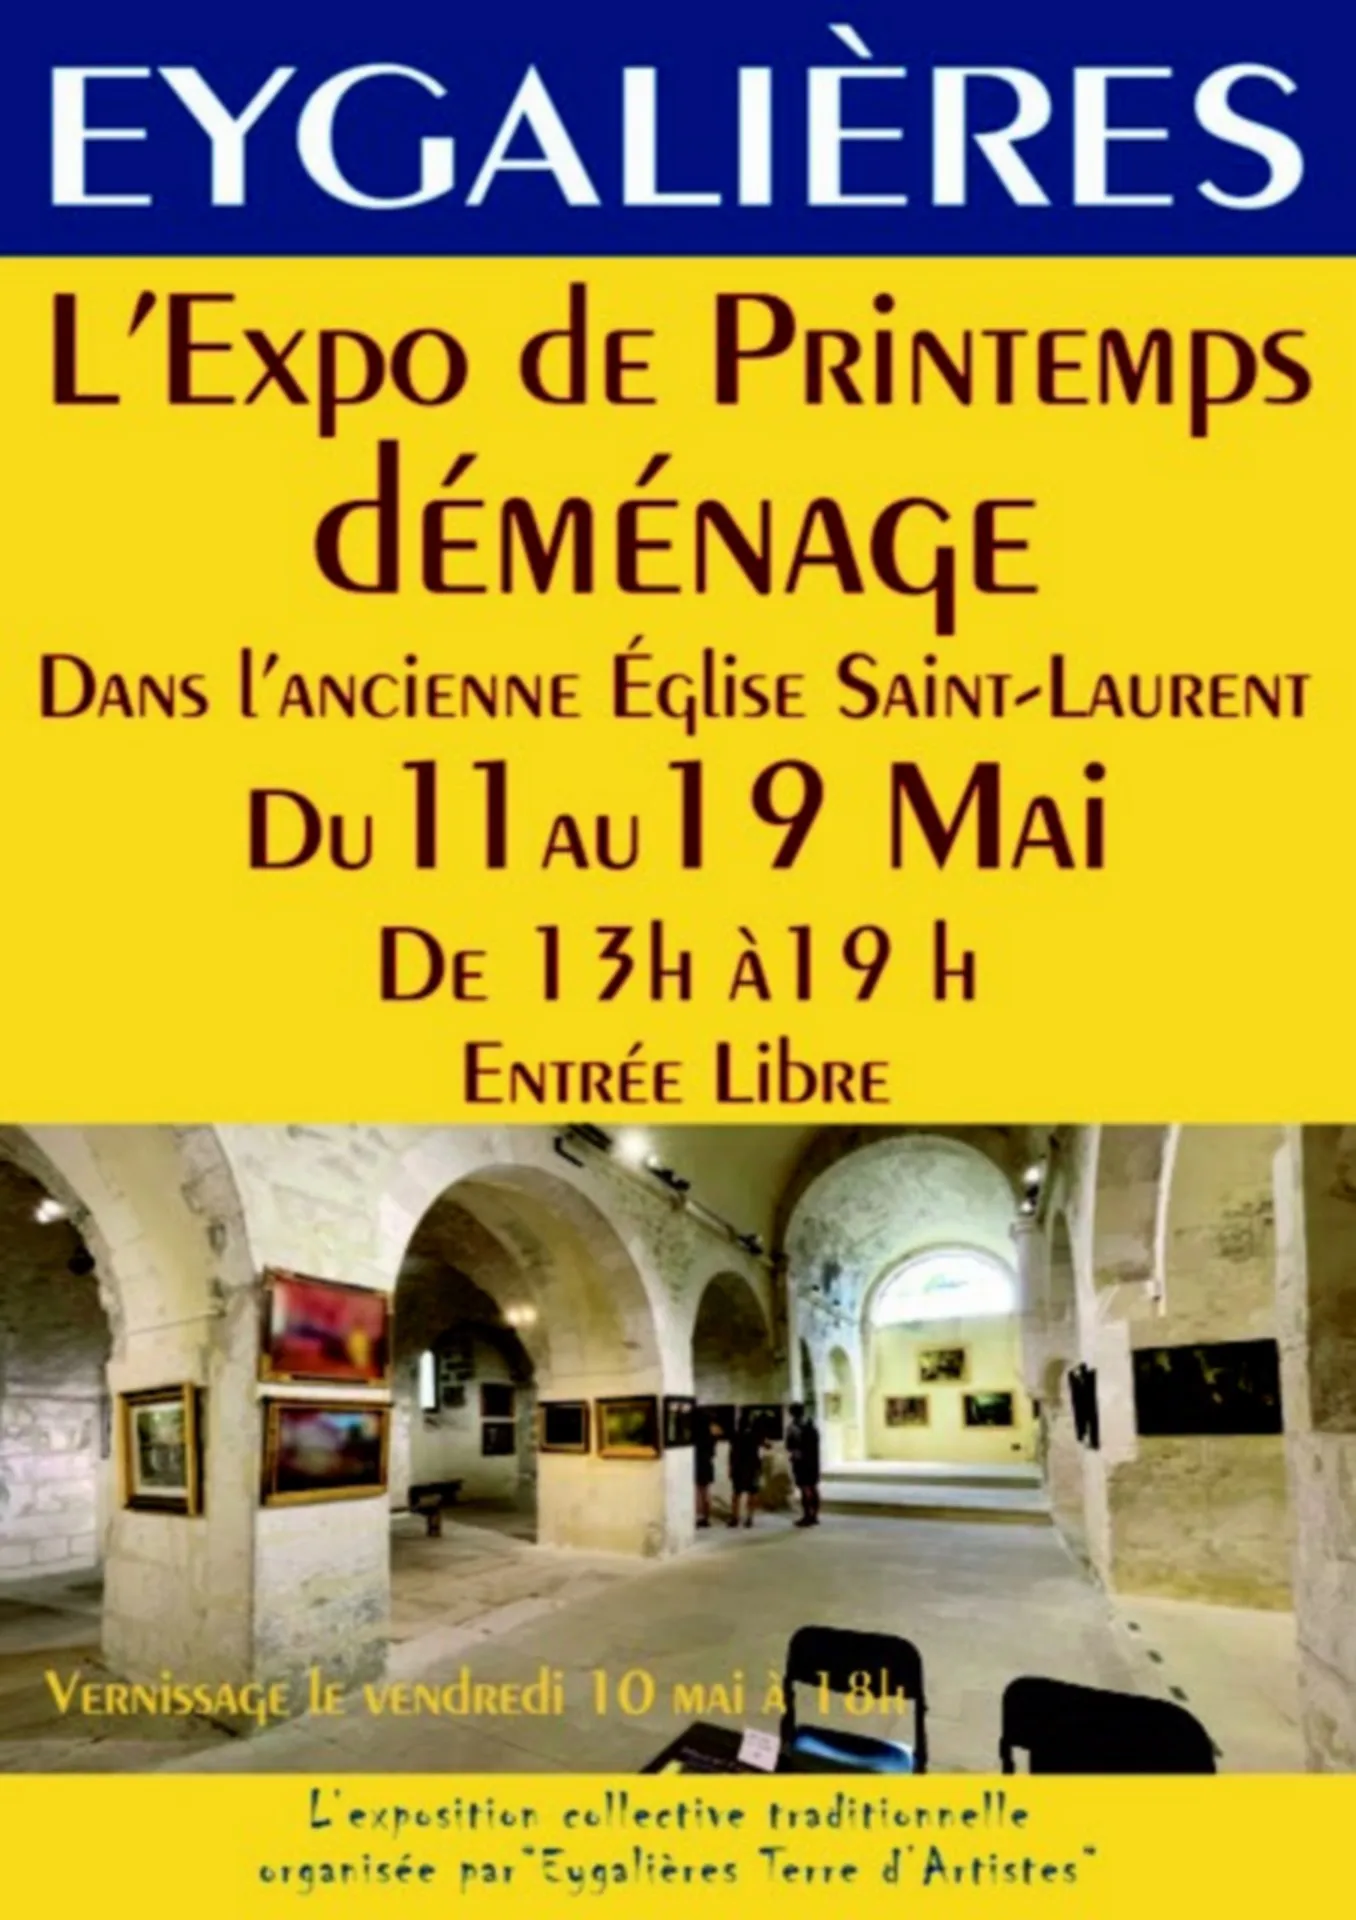 Image qui illustre: Exposition De Printemps à Eygalières - 0